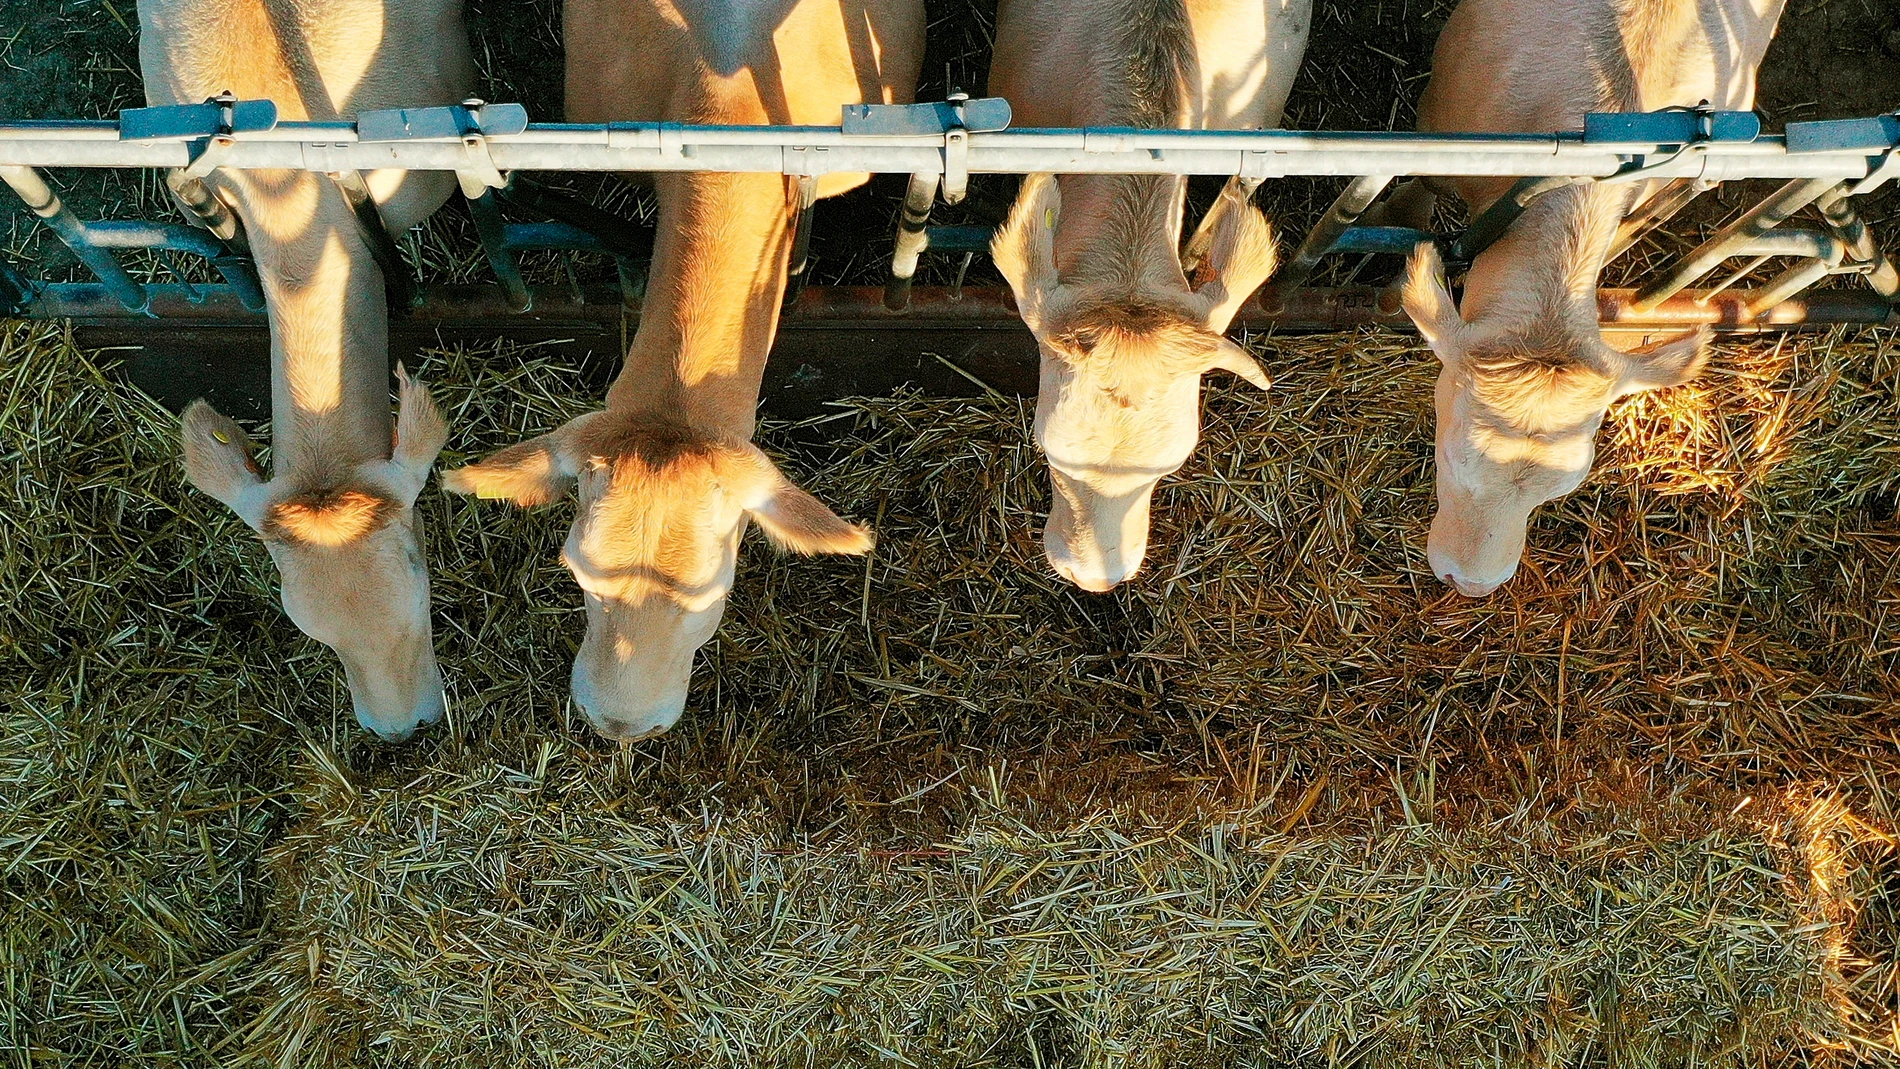 -FOTODELDÍA- GRAFCAV6464. ERDOZAIN, 05/07/2021.- Varias vacas se alimentan de paja en un prado de la localidad de Erdozain. Efe